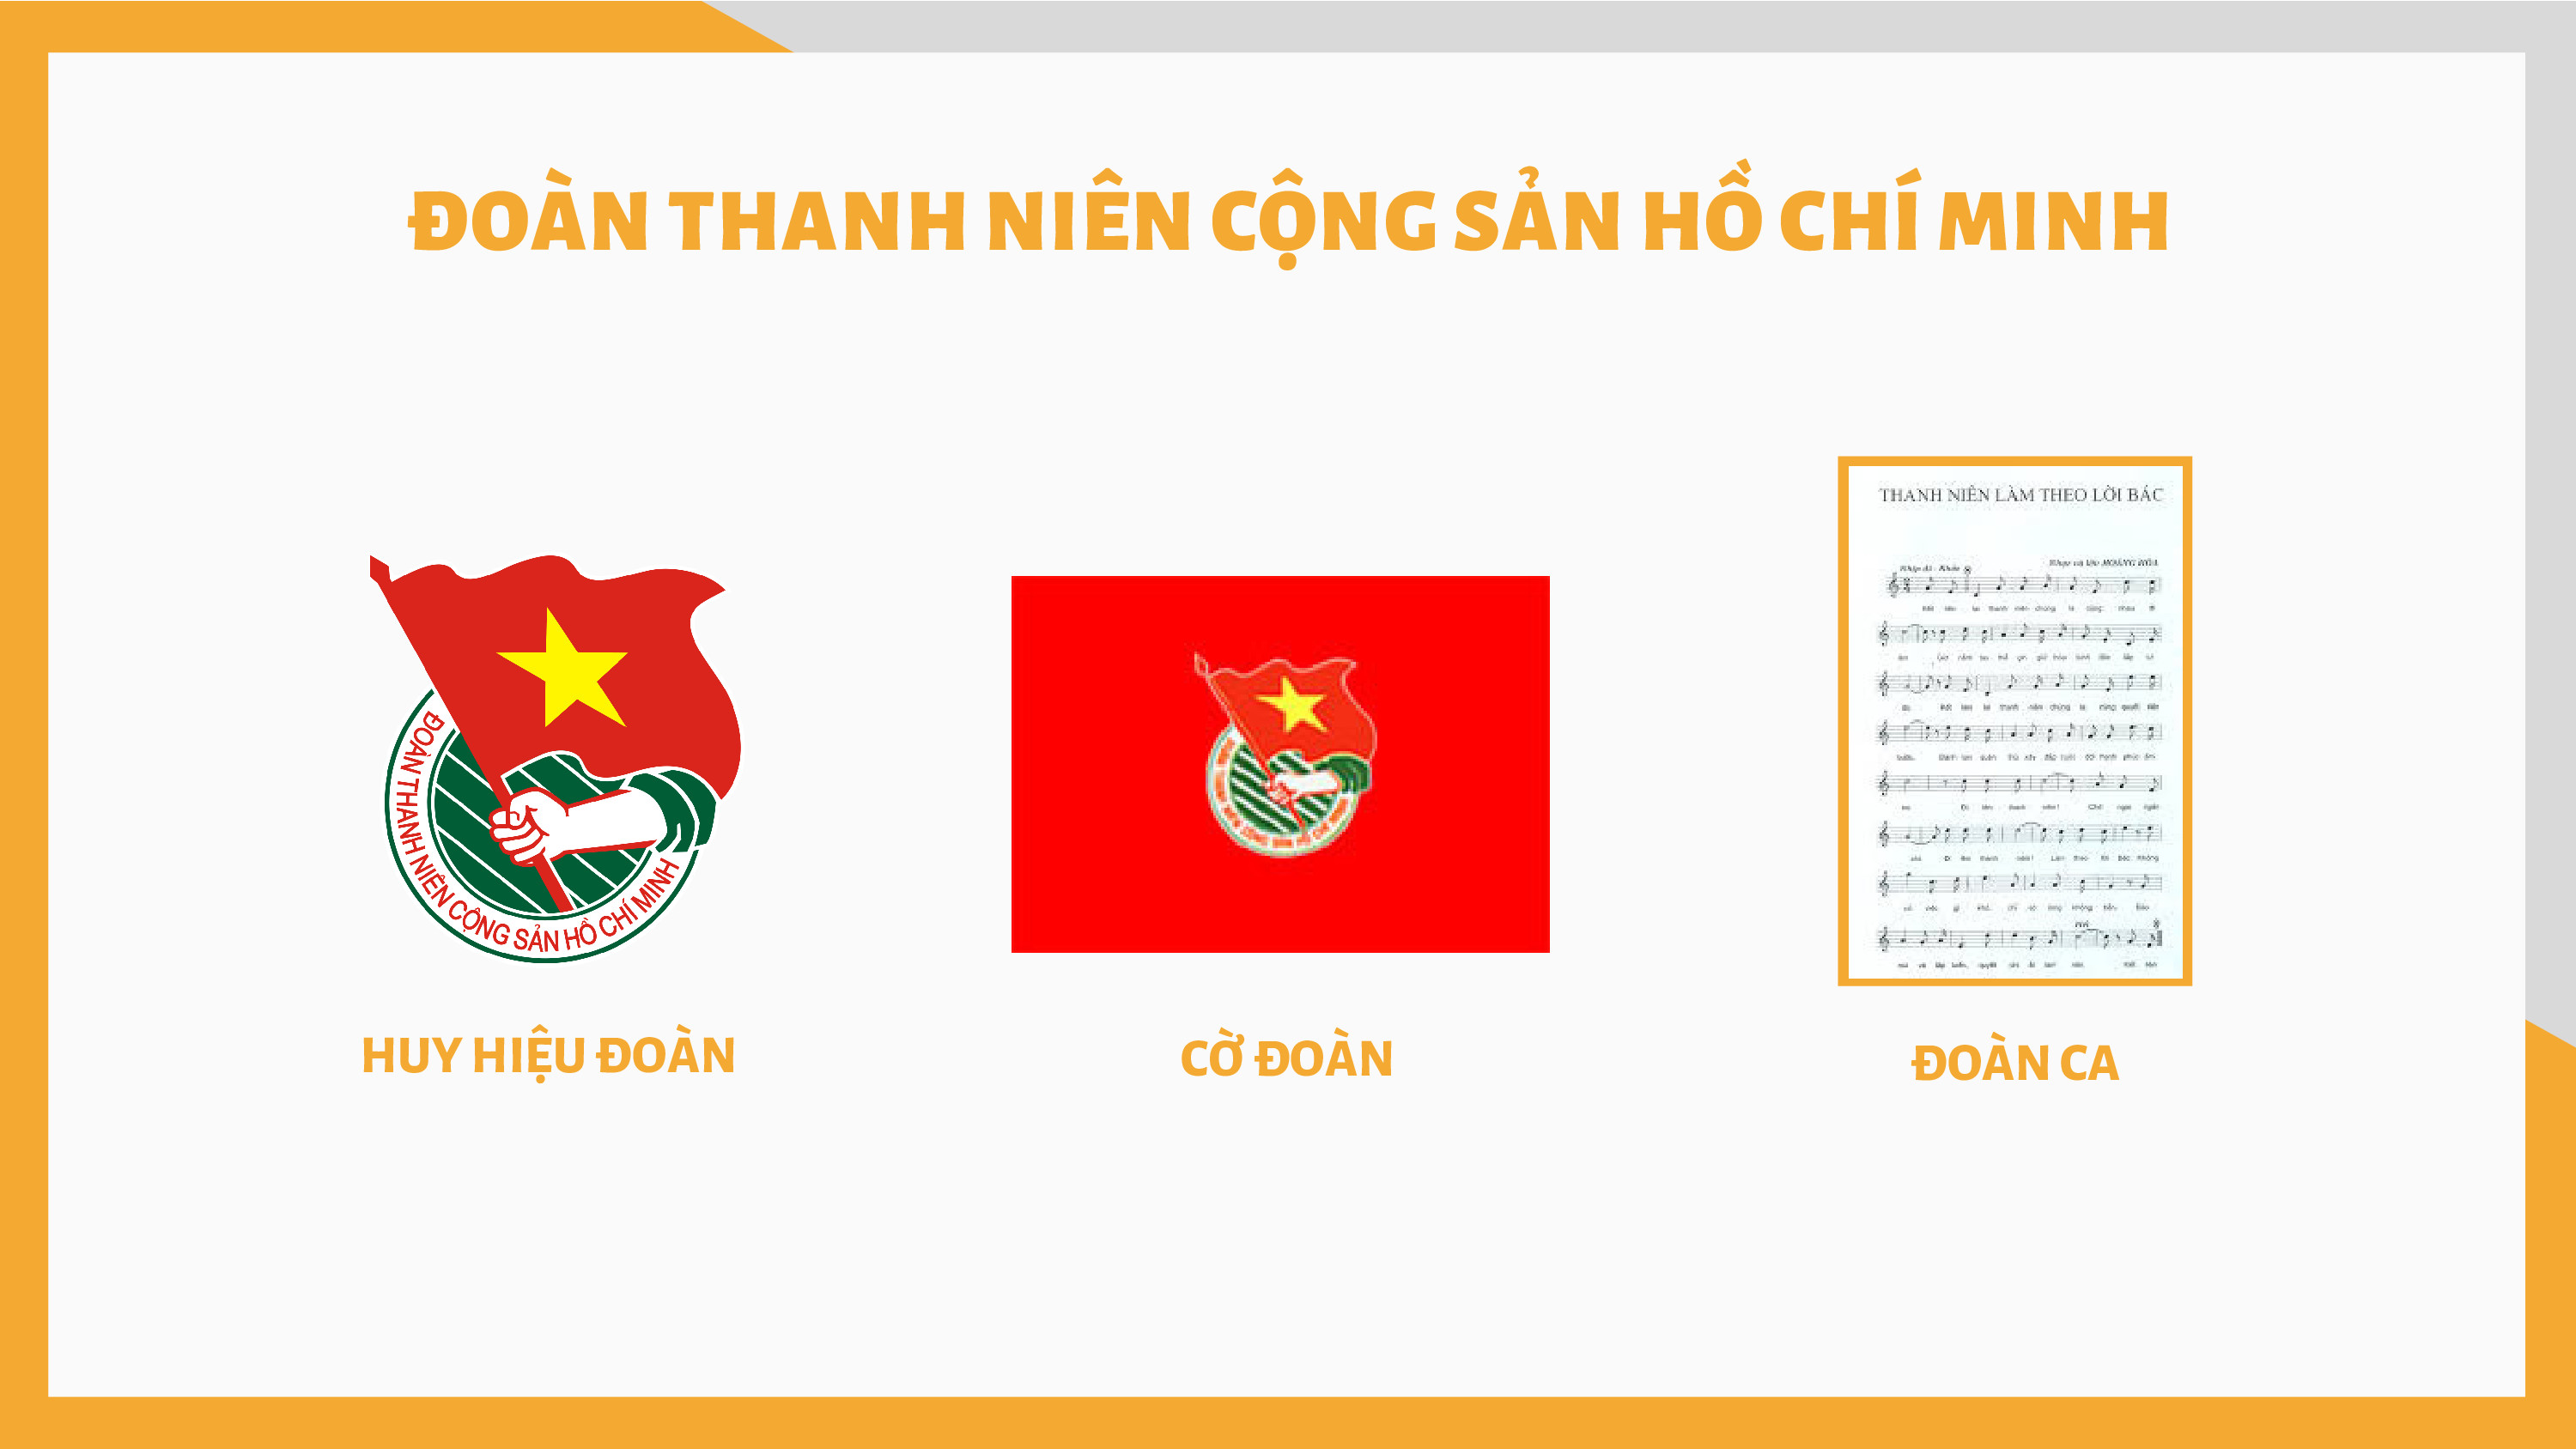 Đoàn TNCS Hồ Chí Minh: Đoàn TNCS Hồ Chí Minh là tổ chức tình nguyện hàng đầu của thanh niên Việt Nam. Với những hoạt động vì cộng đồng và vì đất nước, Đoàn luôn là điểm tựa vững chắc cho các thanh niên trẻ. Với những hành động tích cực và ý nghĩa, Đoàn TNCS Hồ Chí Minh đã tạo nên những dấu ấn đậm nét trong cộng đồng.